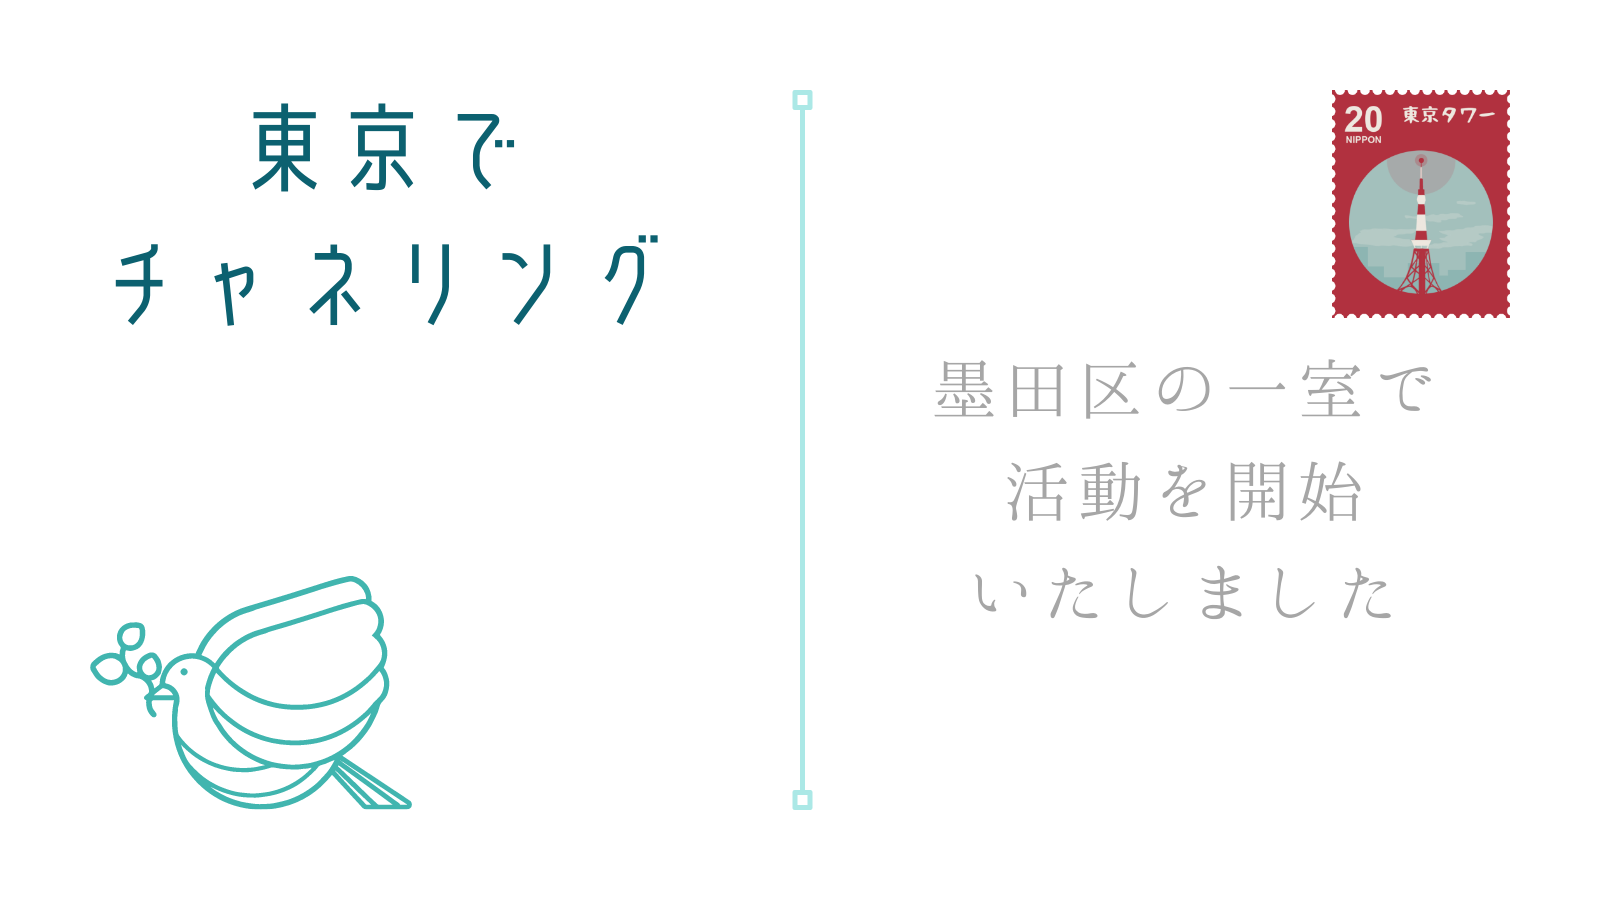 鳩の絵のある葉書に東京タワーの切手、東京でチャネリング、墨田区の一室で活動を開始いたしました、という文字